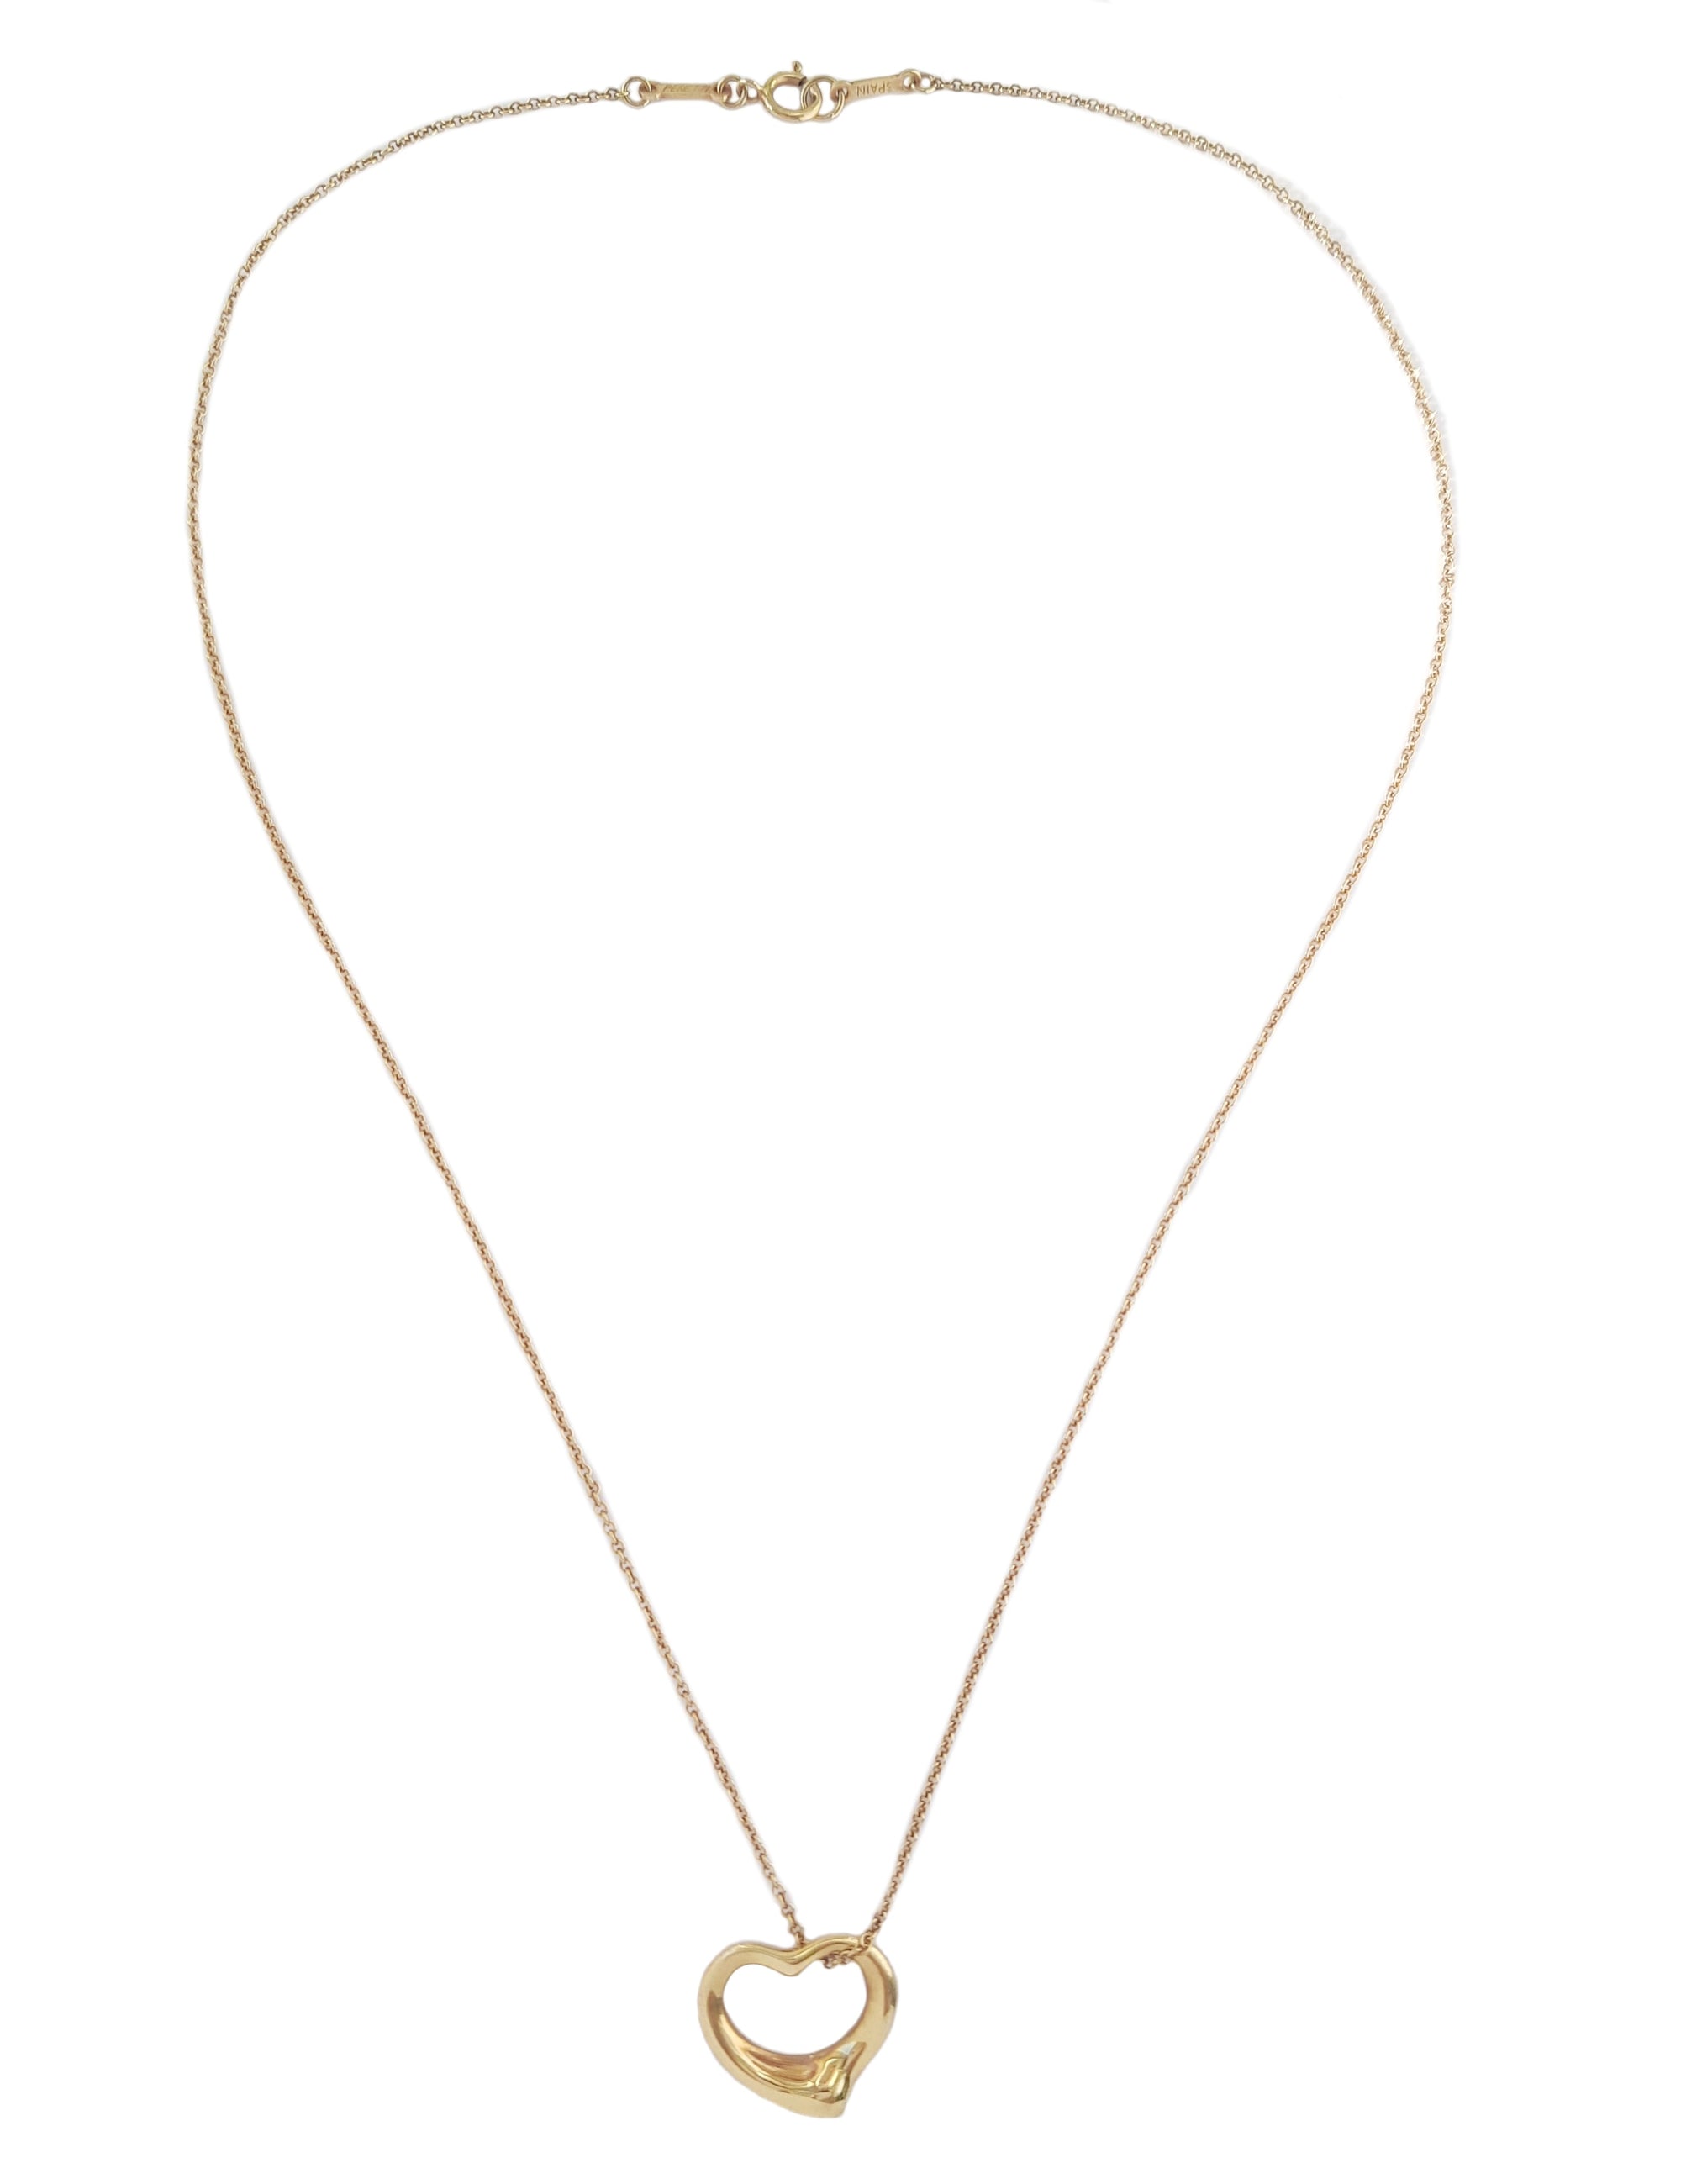 Tiffany & Co. Elsa Peretti 750 (Gold) Open Heart Necklace